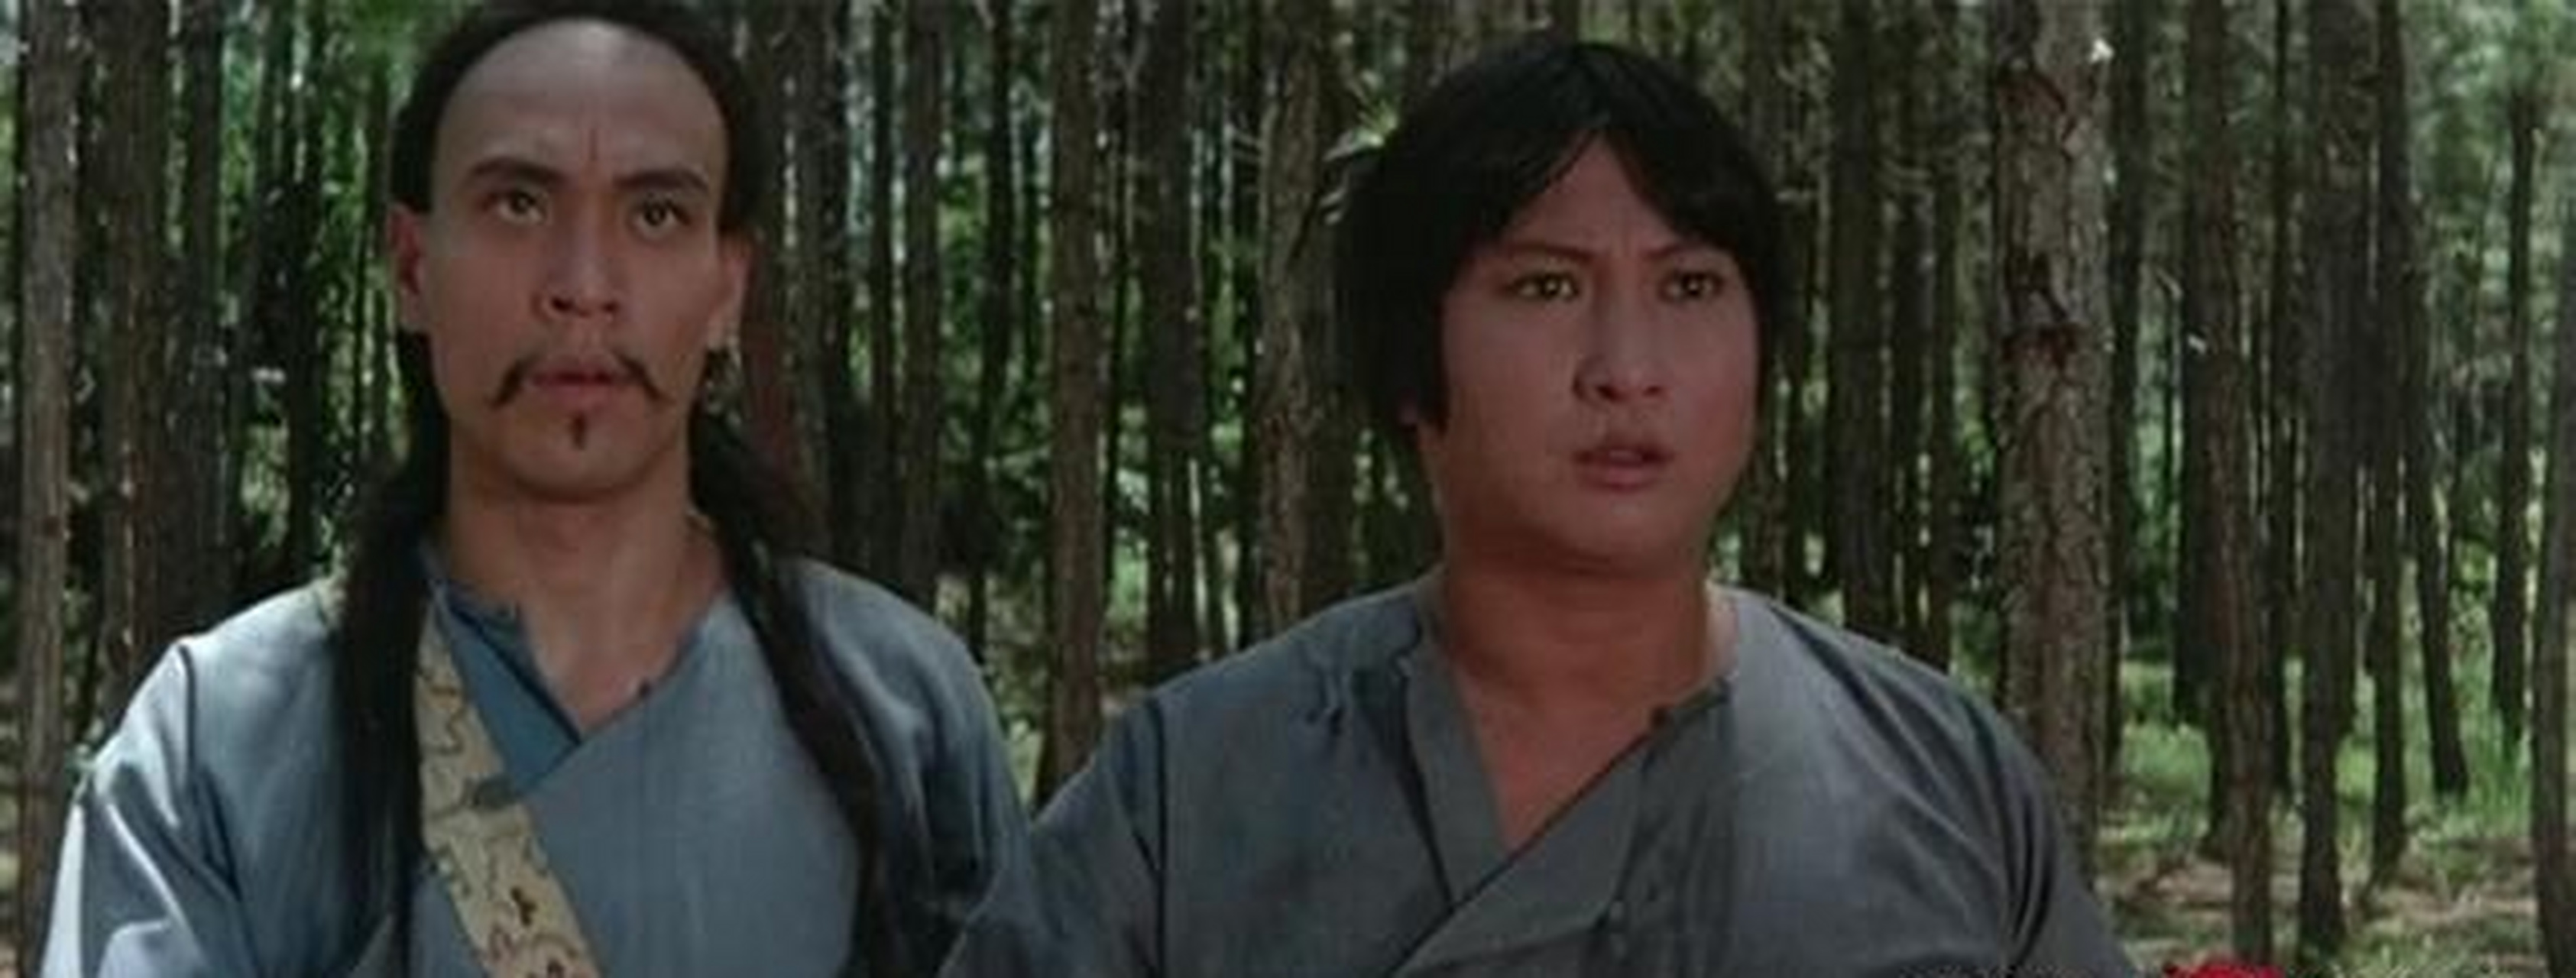 《驱魔道长》的两个徒弟邹兆龙和陈佳君在演技方面都显得生疏,远不如